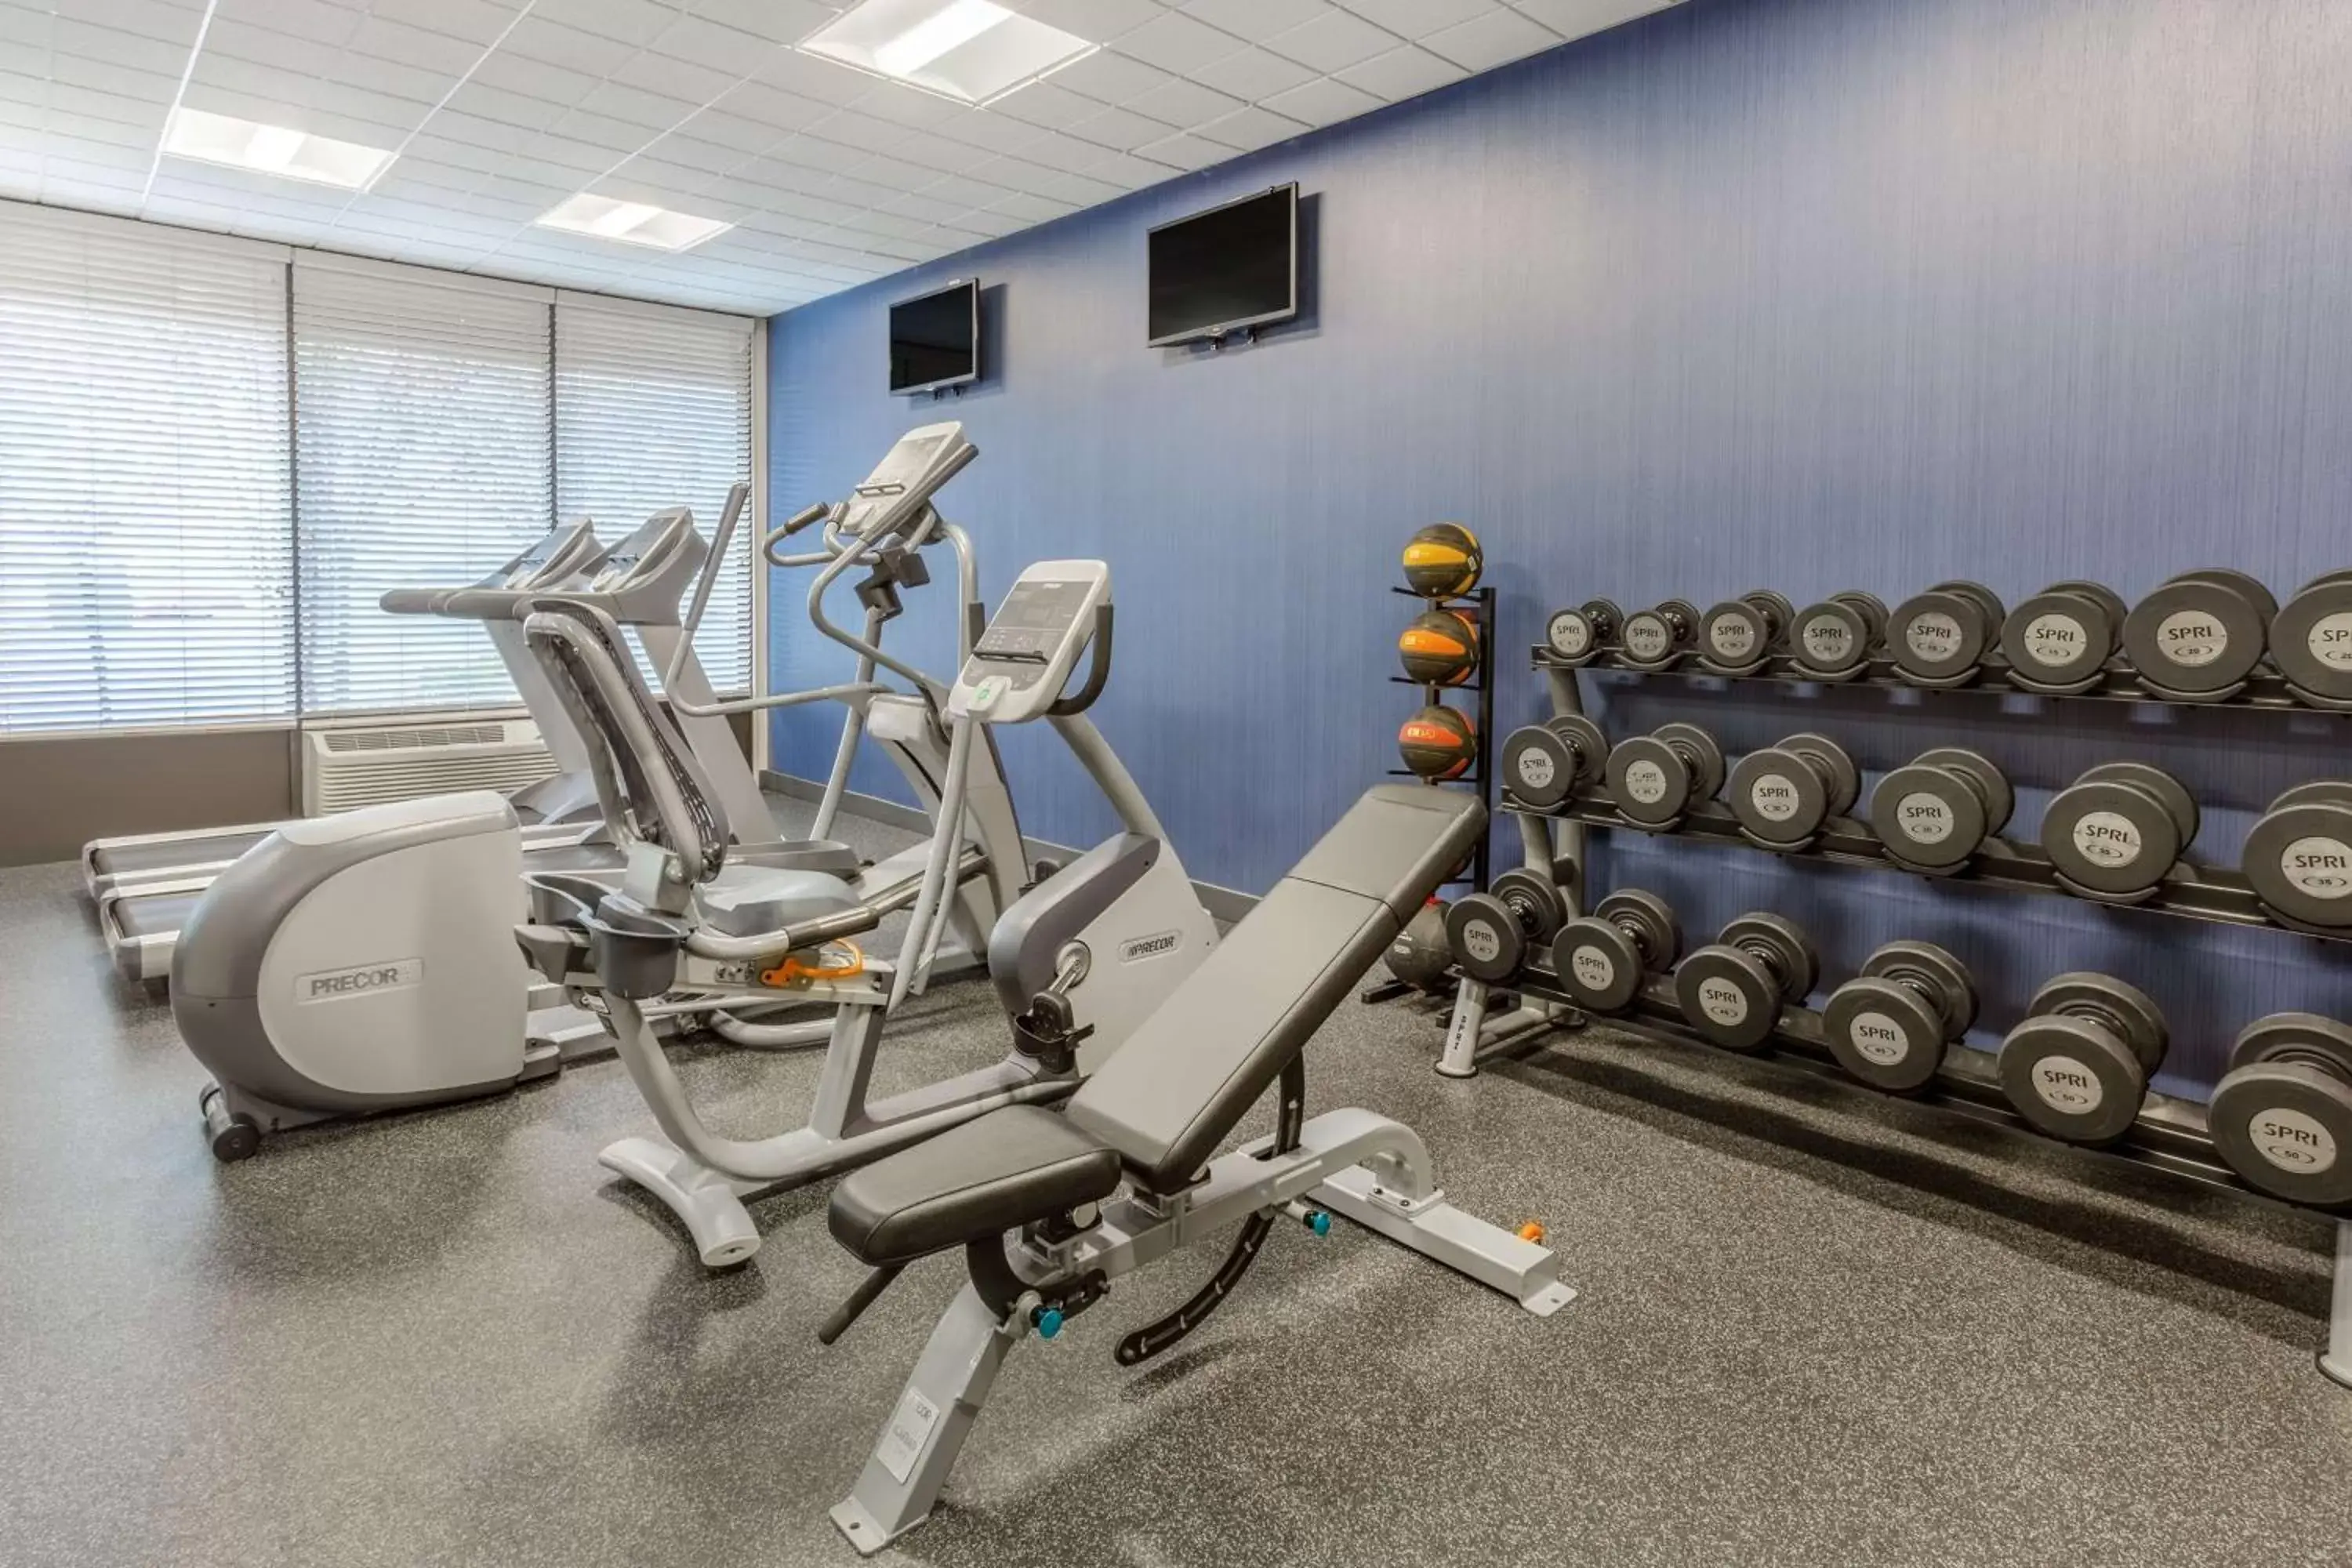 Fitness centre/facilities, Fitness Center/Facilities in Hampton Inn Manassas